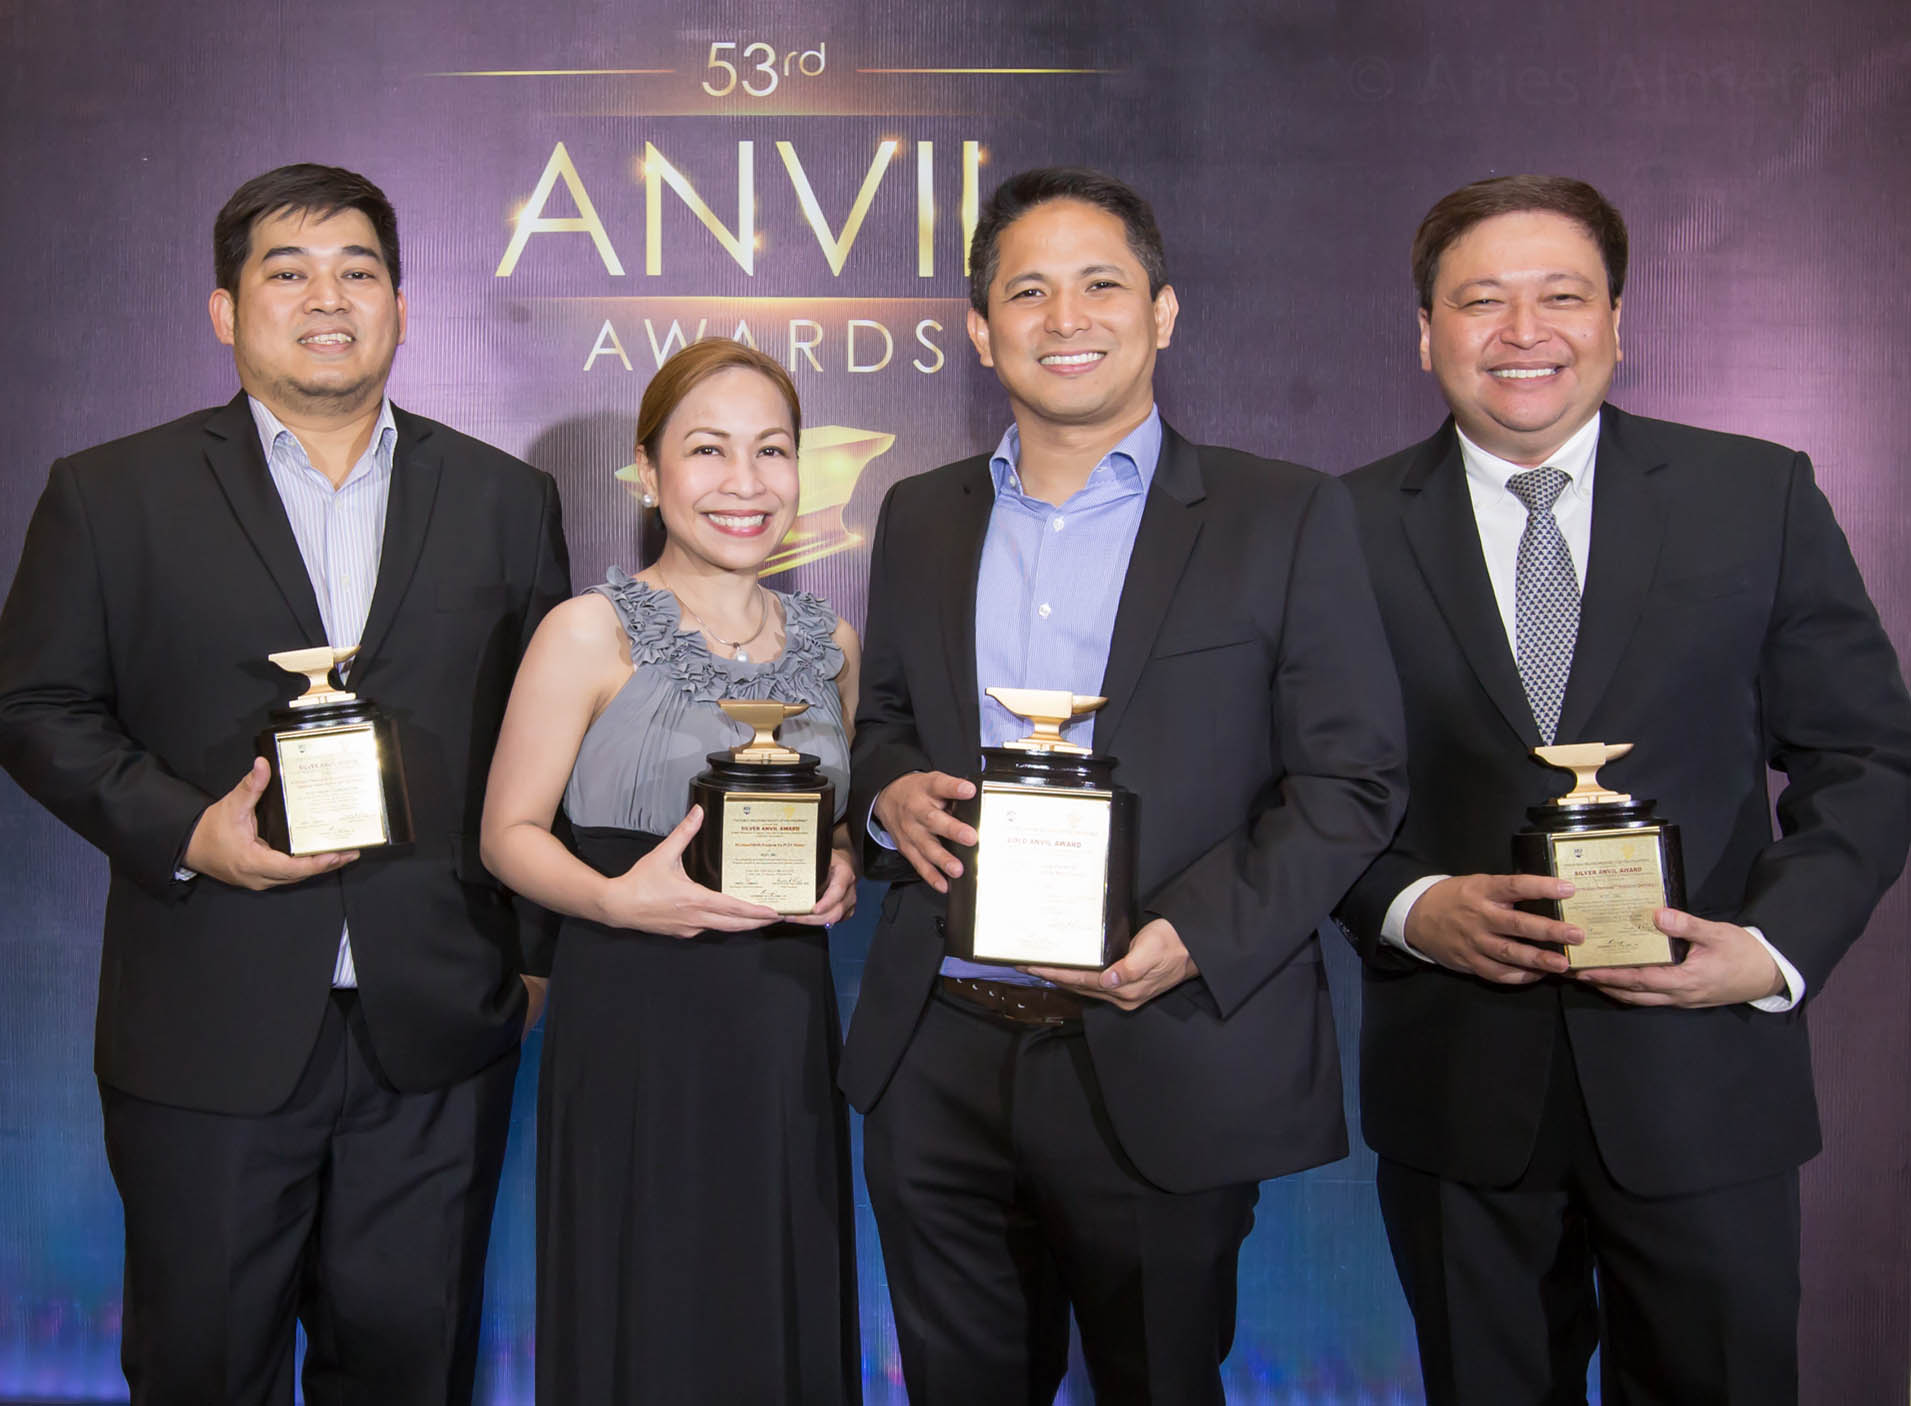 PLDT wins 13 awards at the 53rd Anvil Awards